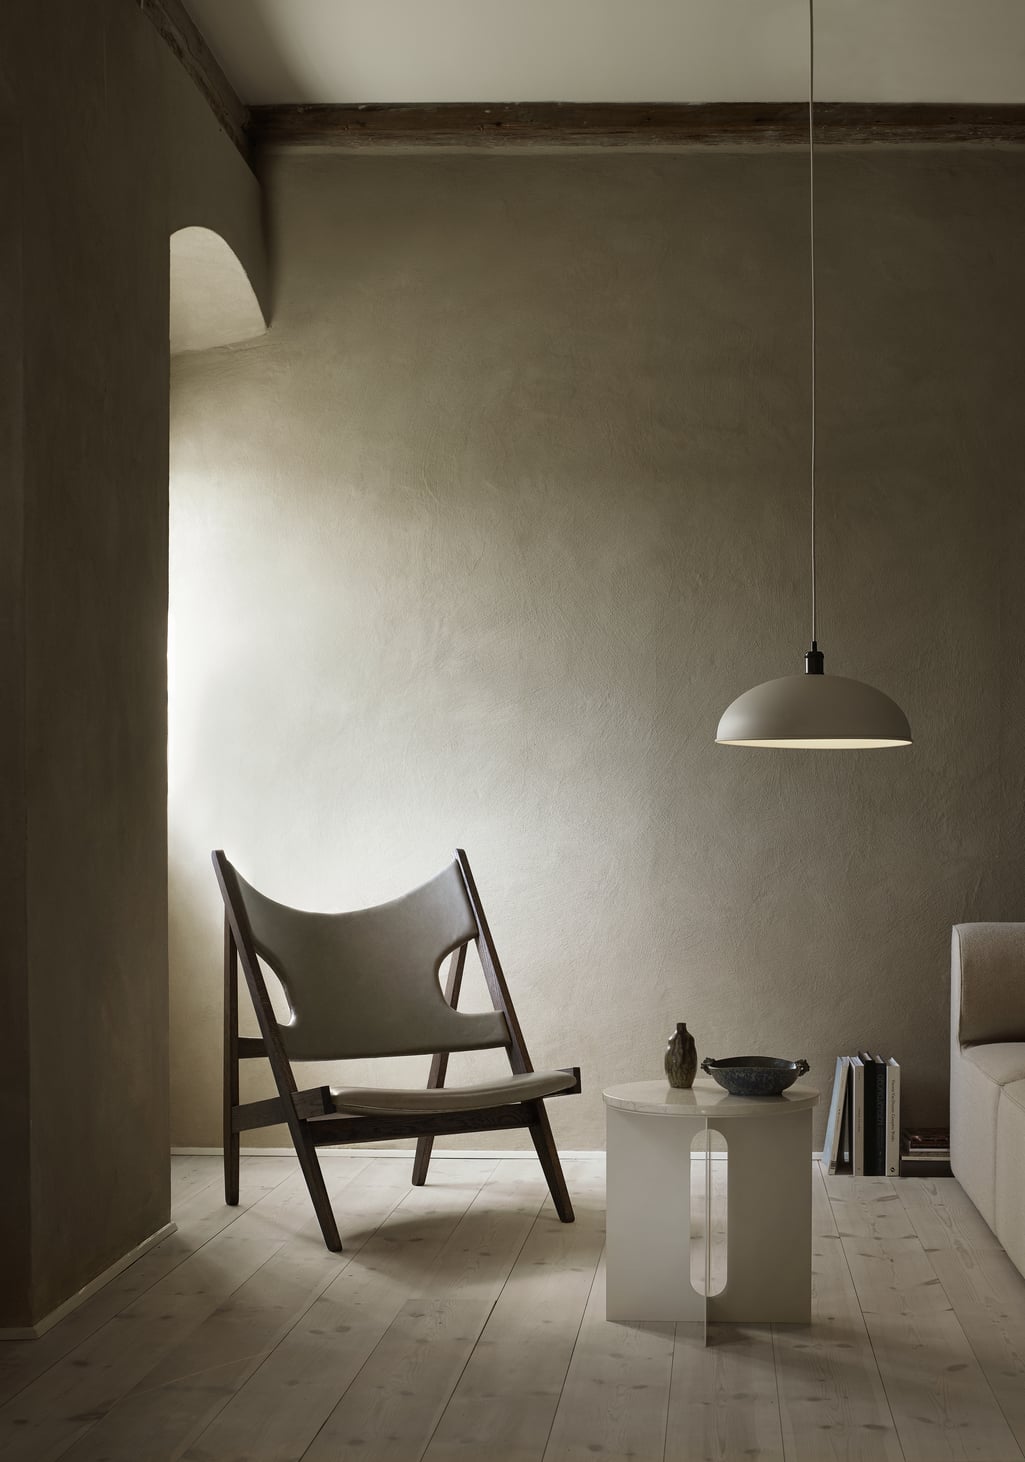 Knitting Chair by Ib Kofod-Larsen – Menu